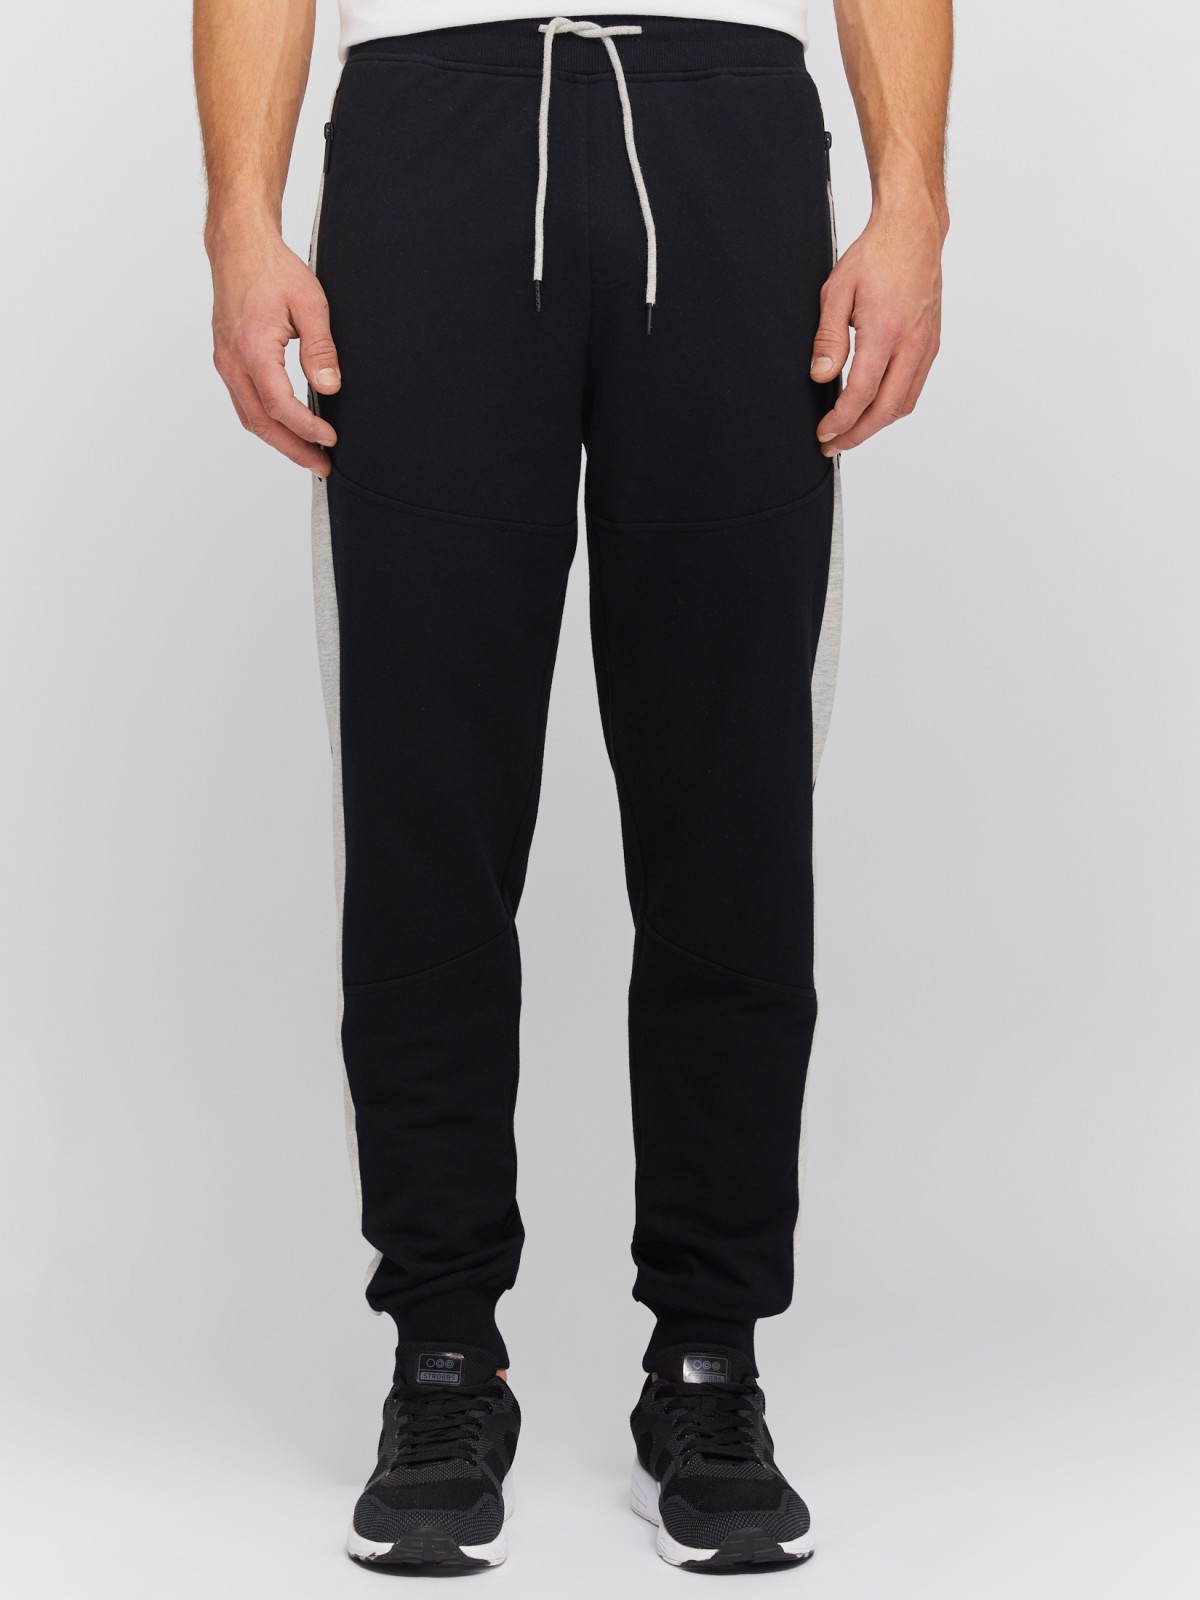 Трикотажные брюки-джоггеры с лампасами zolla 014137660061, цвет черный, размер S - фото 2